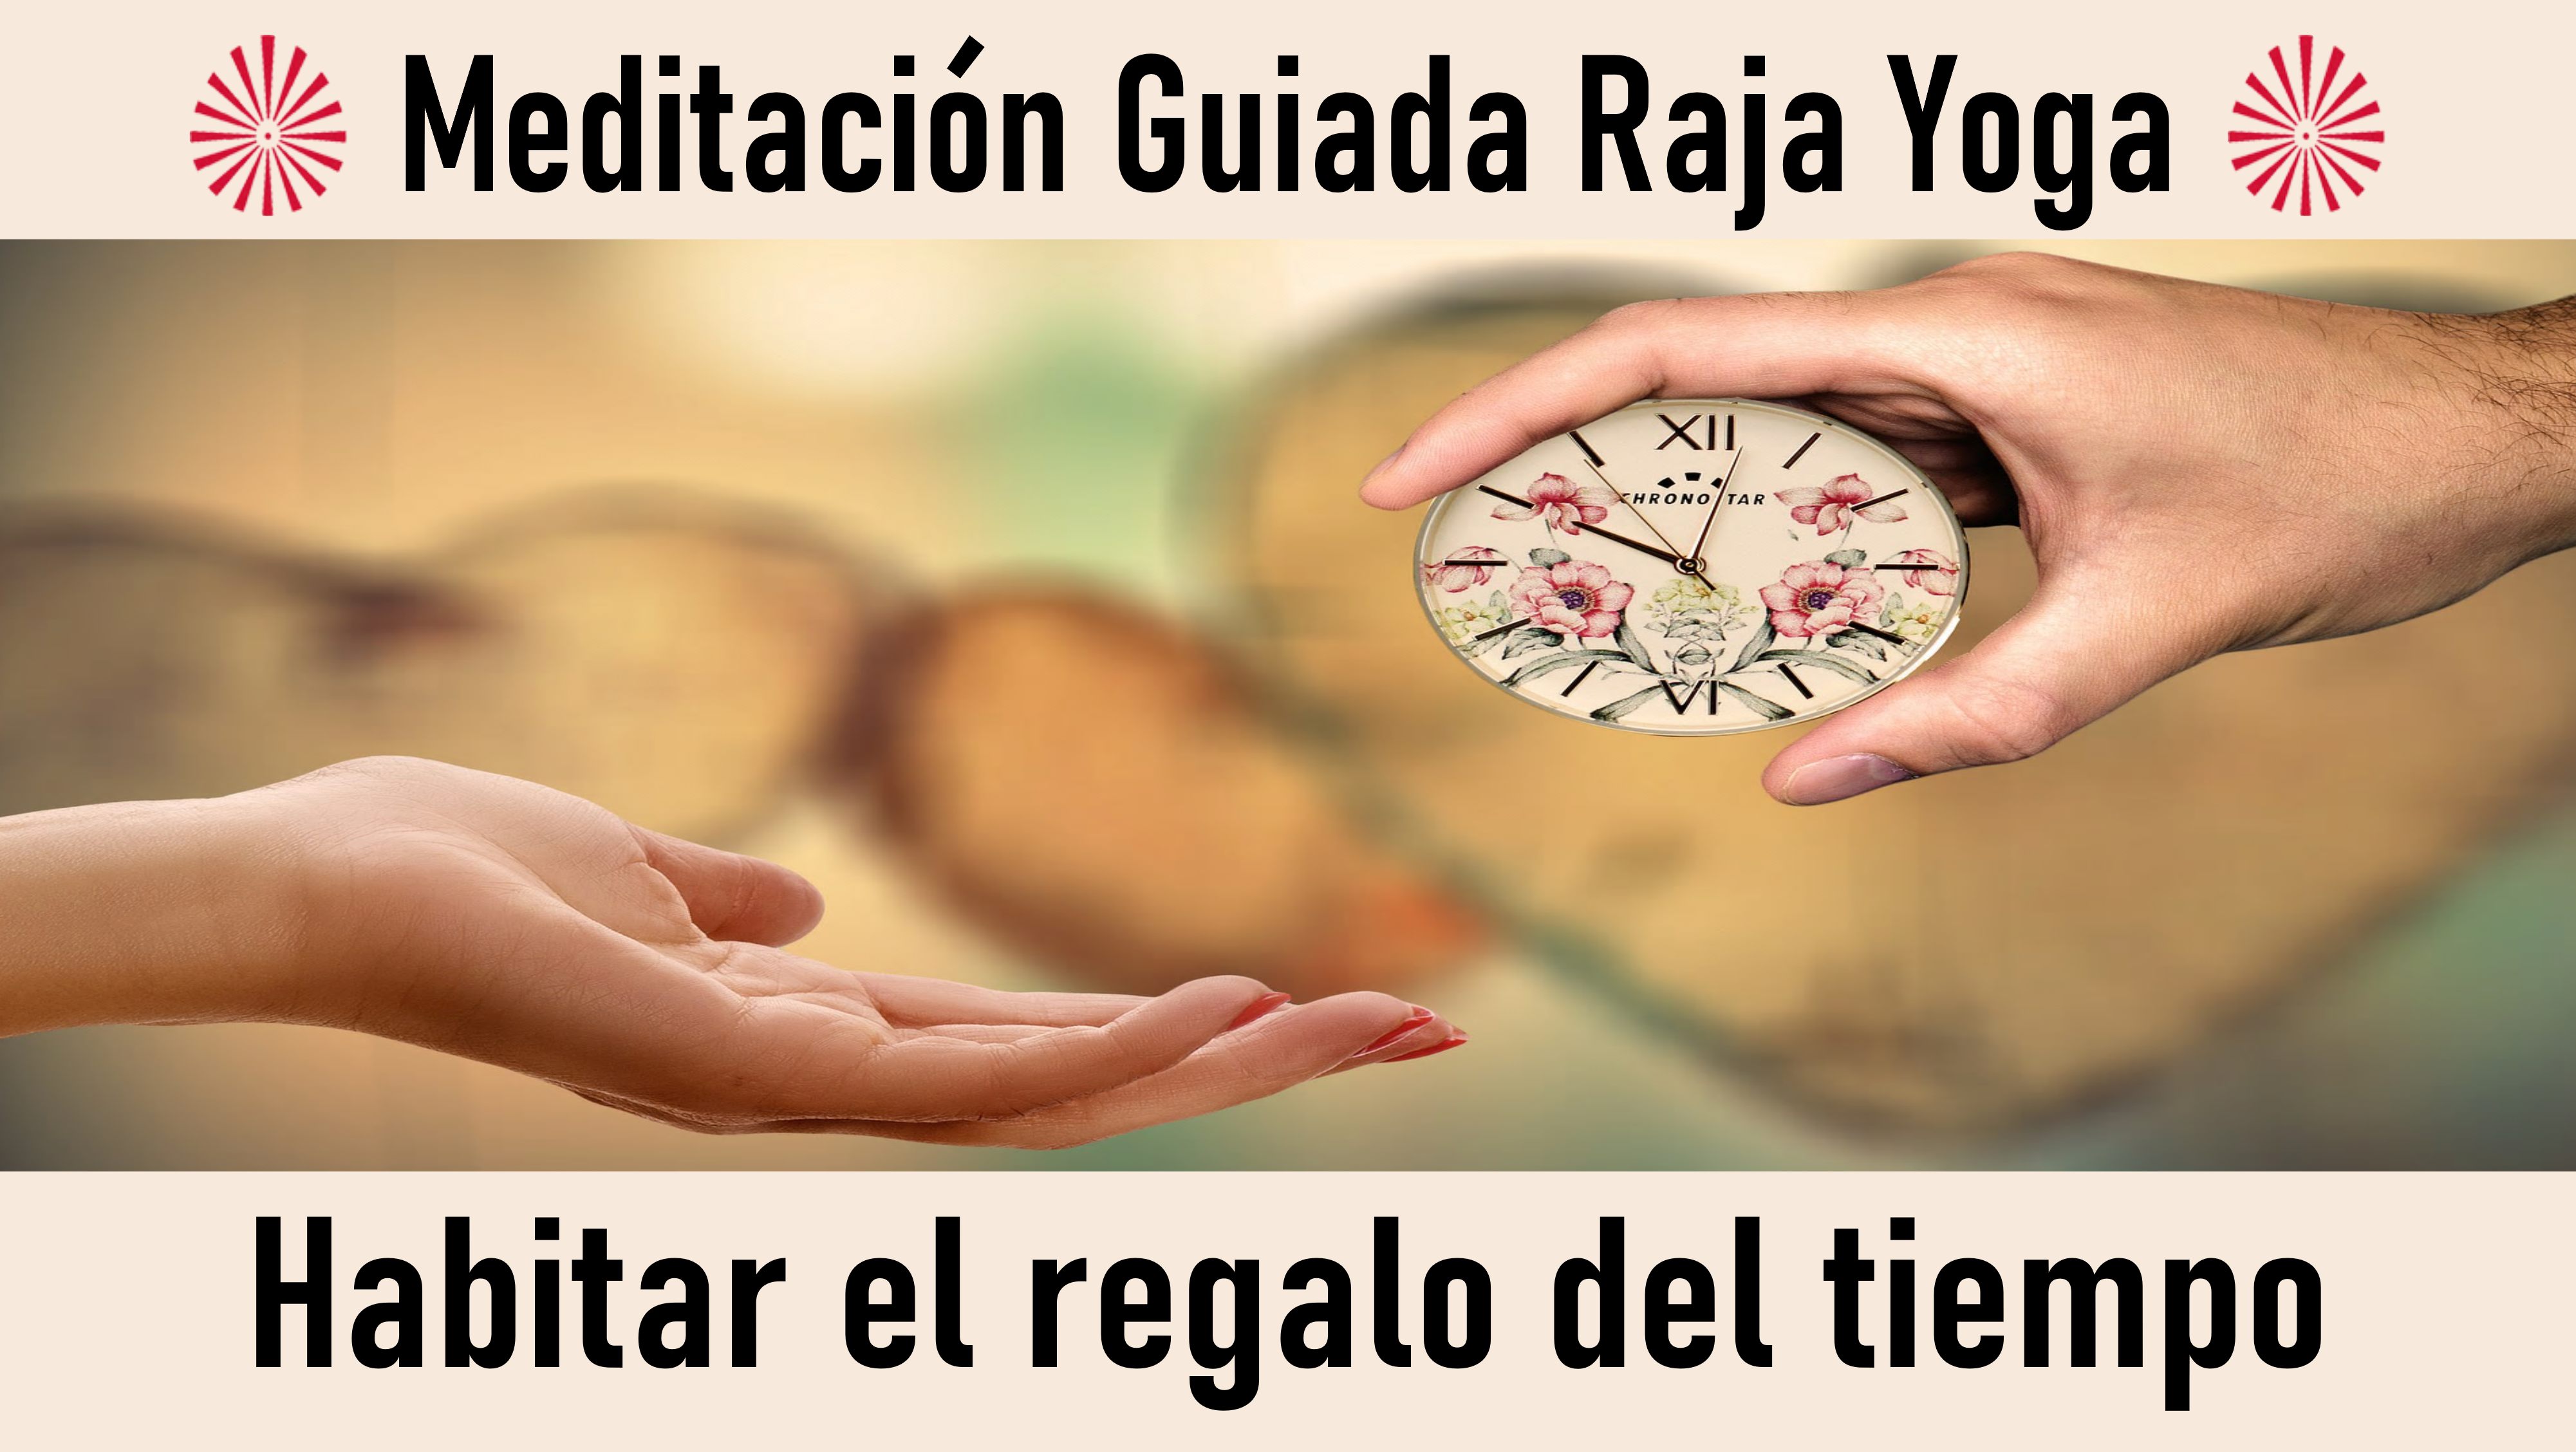 Meditación Raja Yoga: Habitar el regalo del tiempo (9 Octubre 2020) On-line desde Barcelona